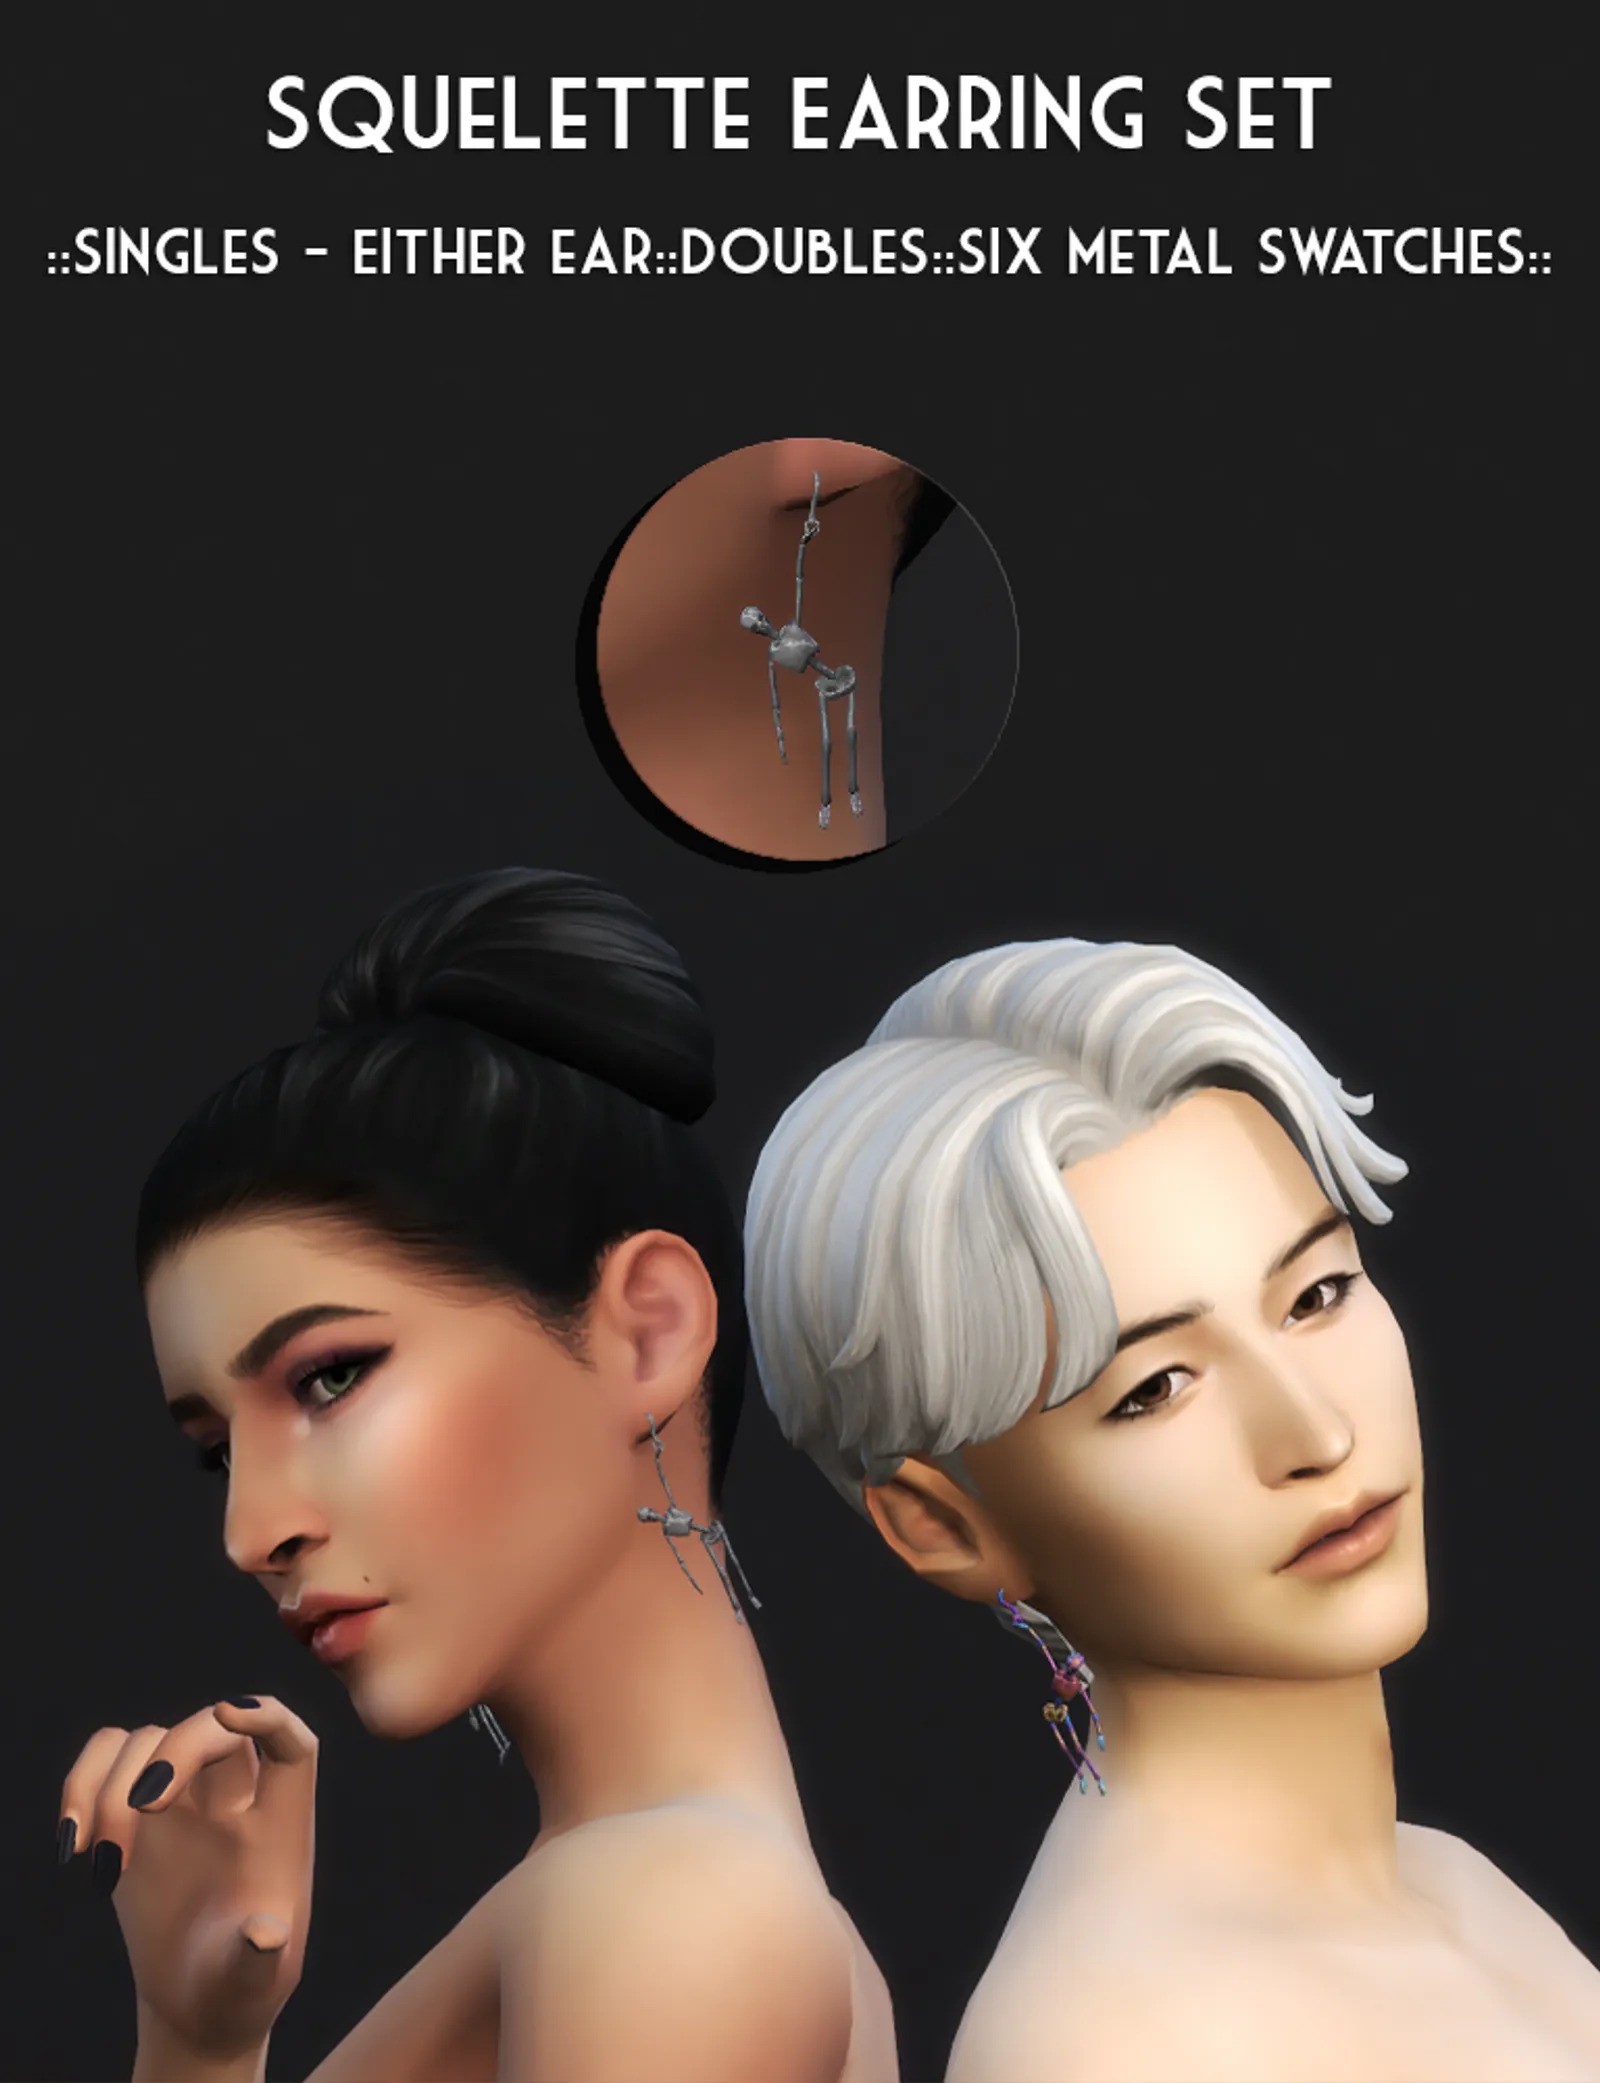 Squelette Earrings Set